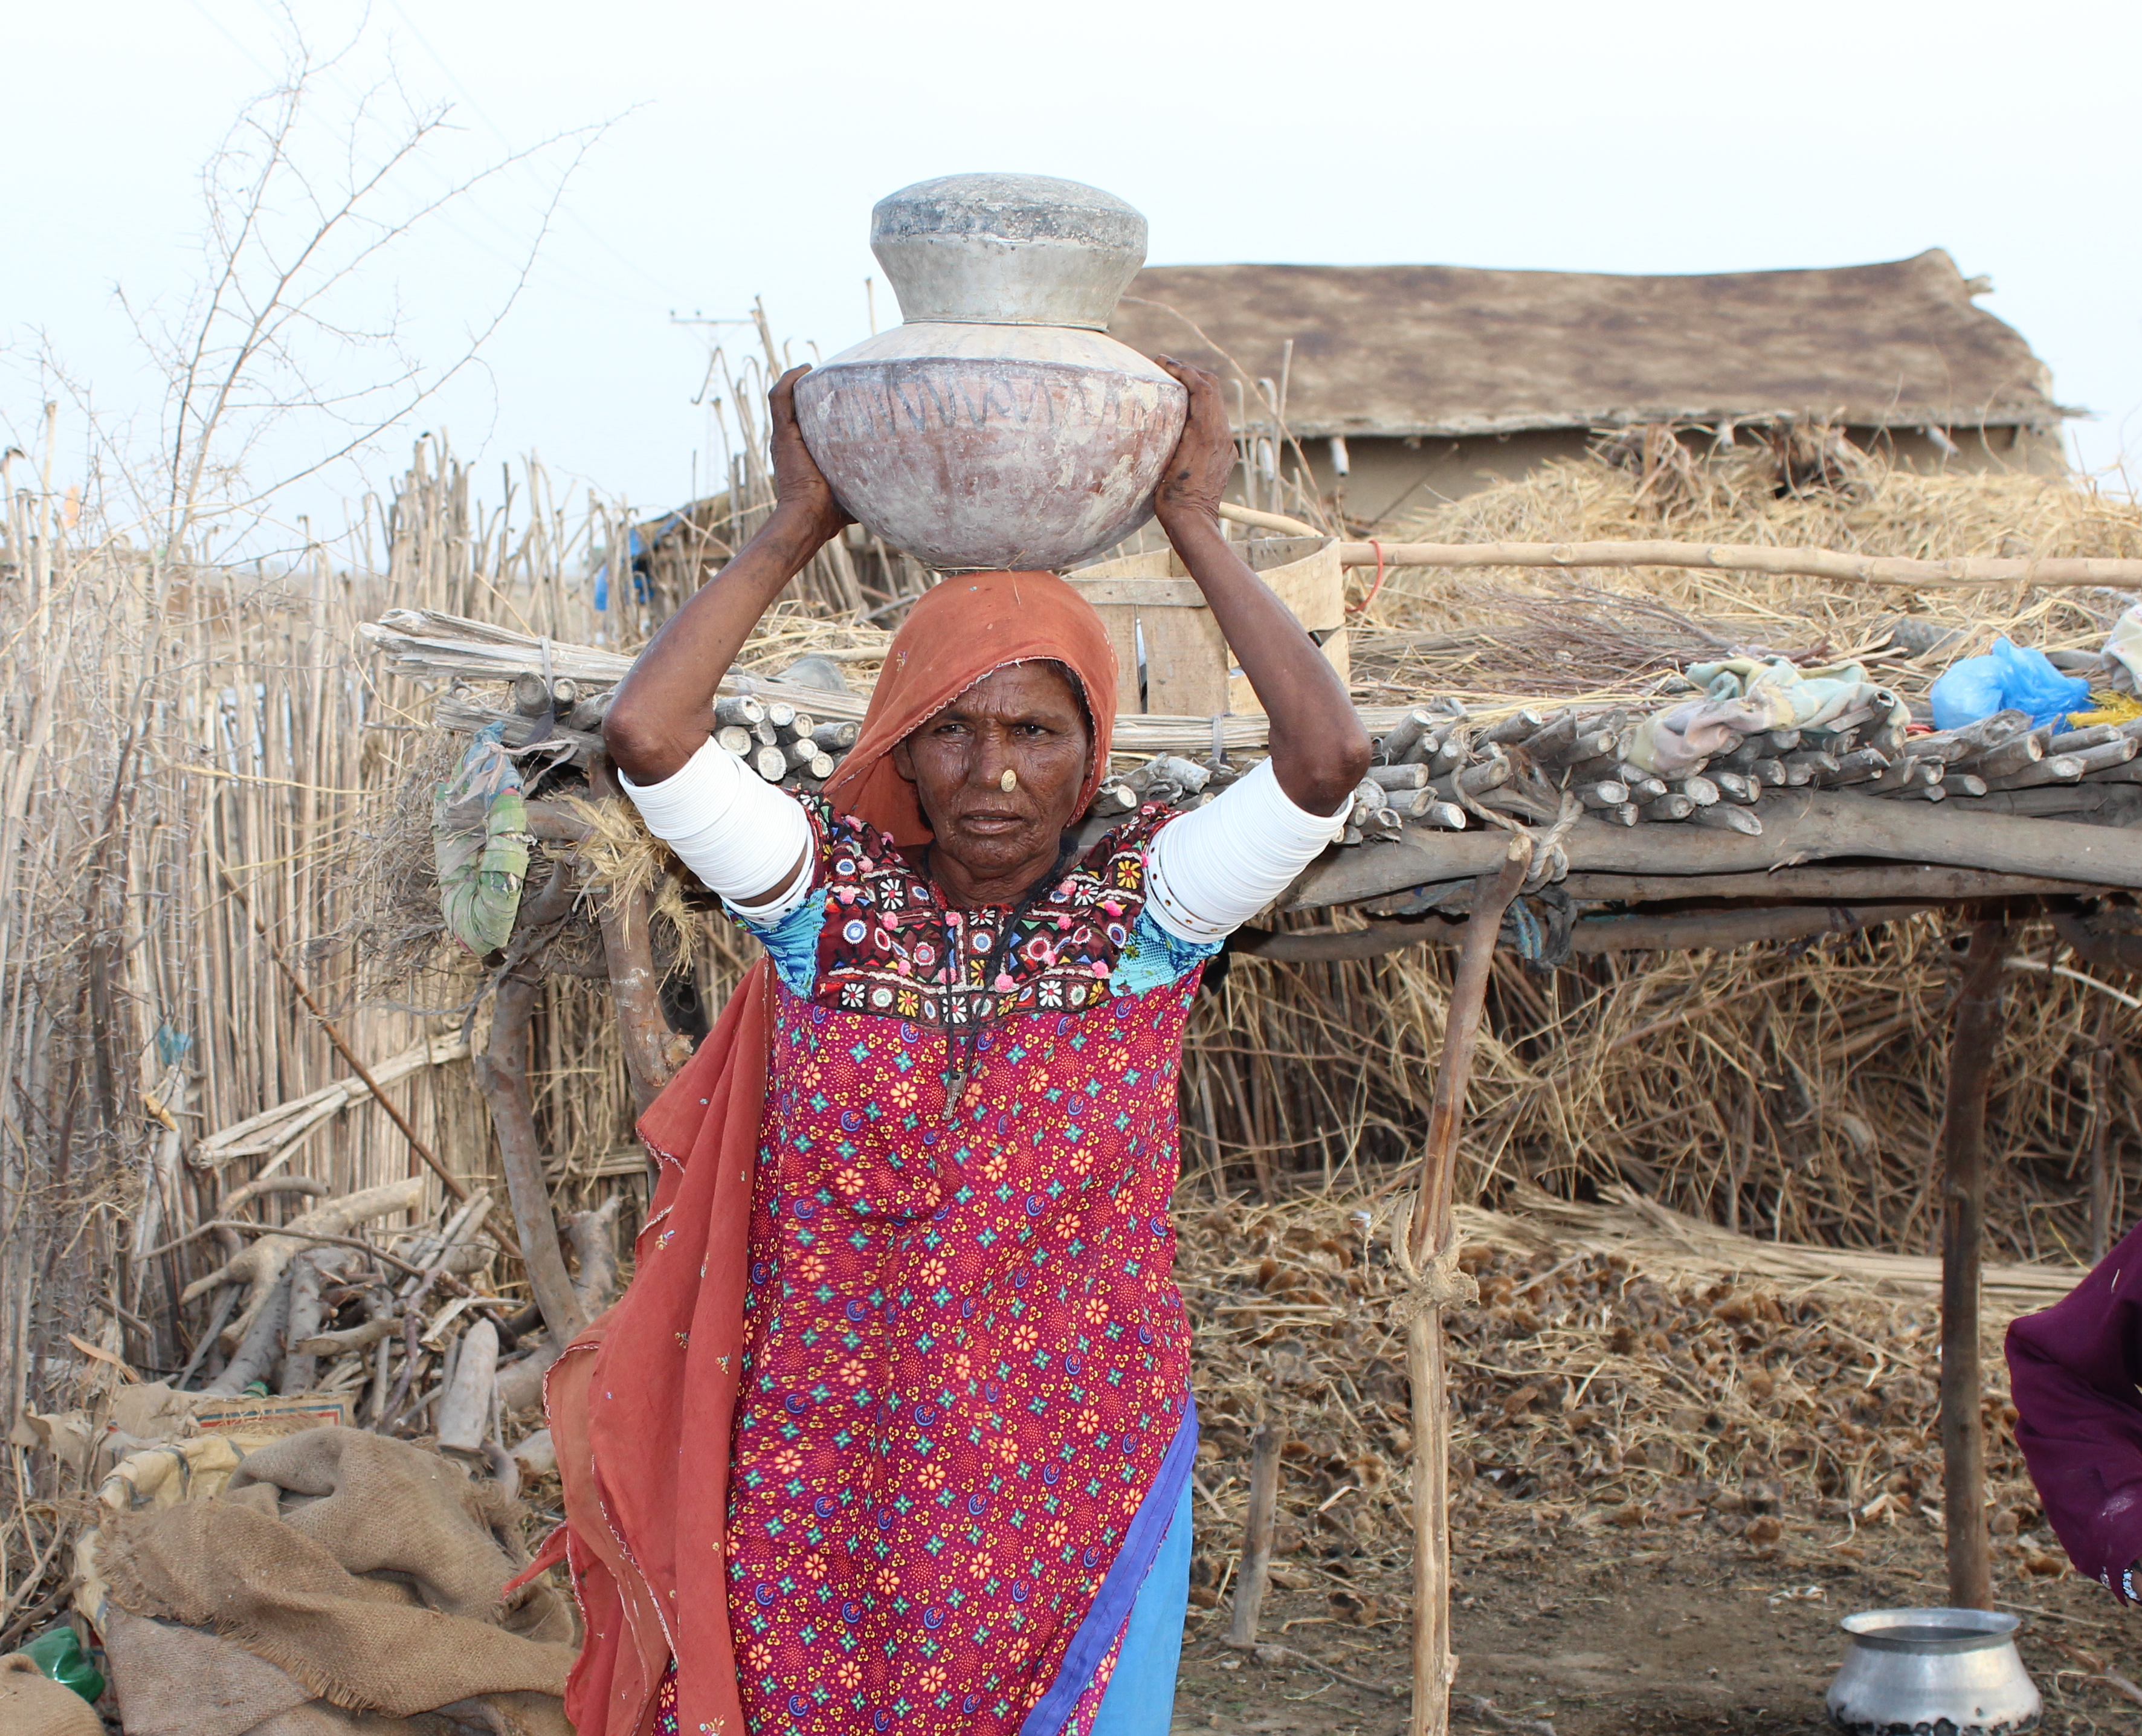 Woman in Pakistan retrieves water